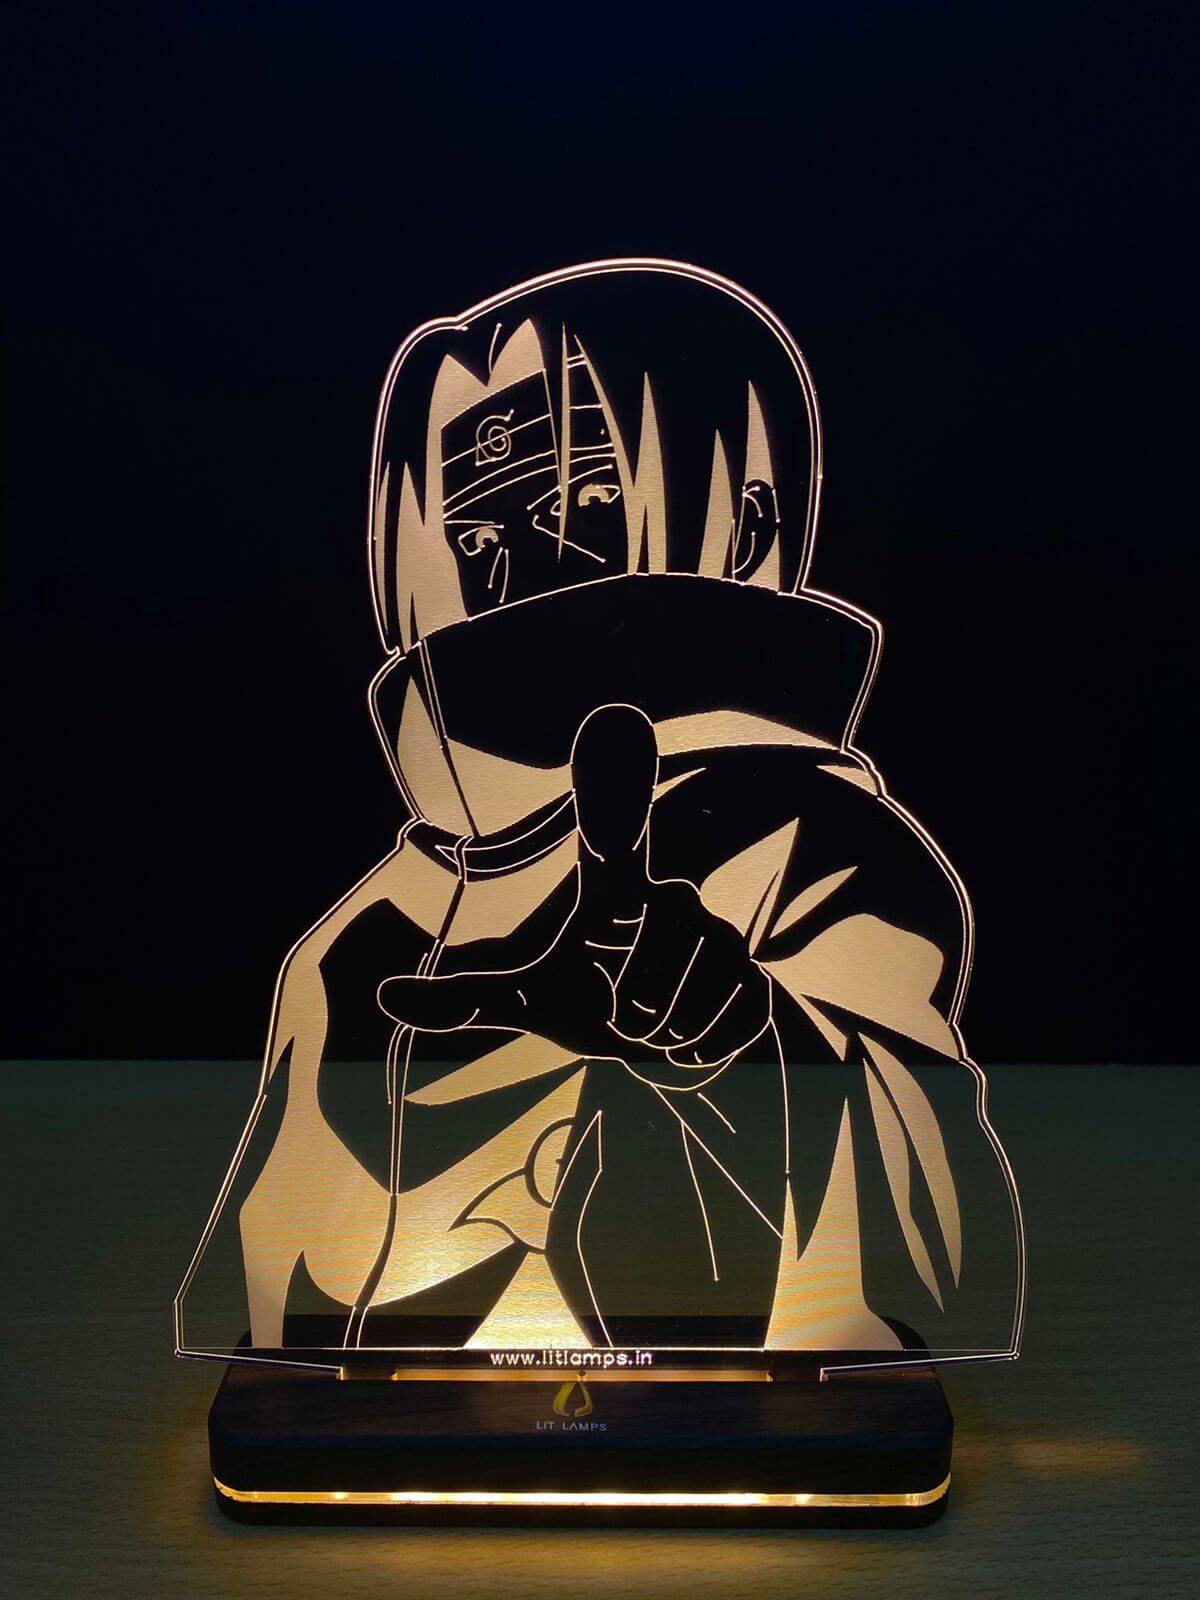 Itachi Uchiha Naruto Anime Decor Aesthetic 3D Illusion Lamp by LIT Lamps - LIT Lamps - Itachi Uchiha 3D LED Lamp-3d Lamps